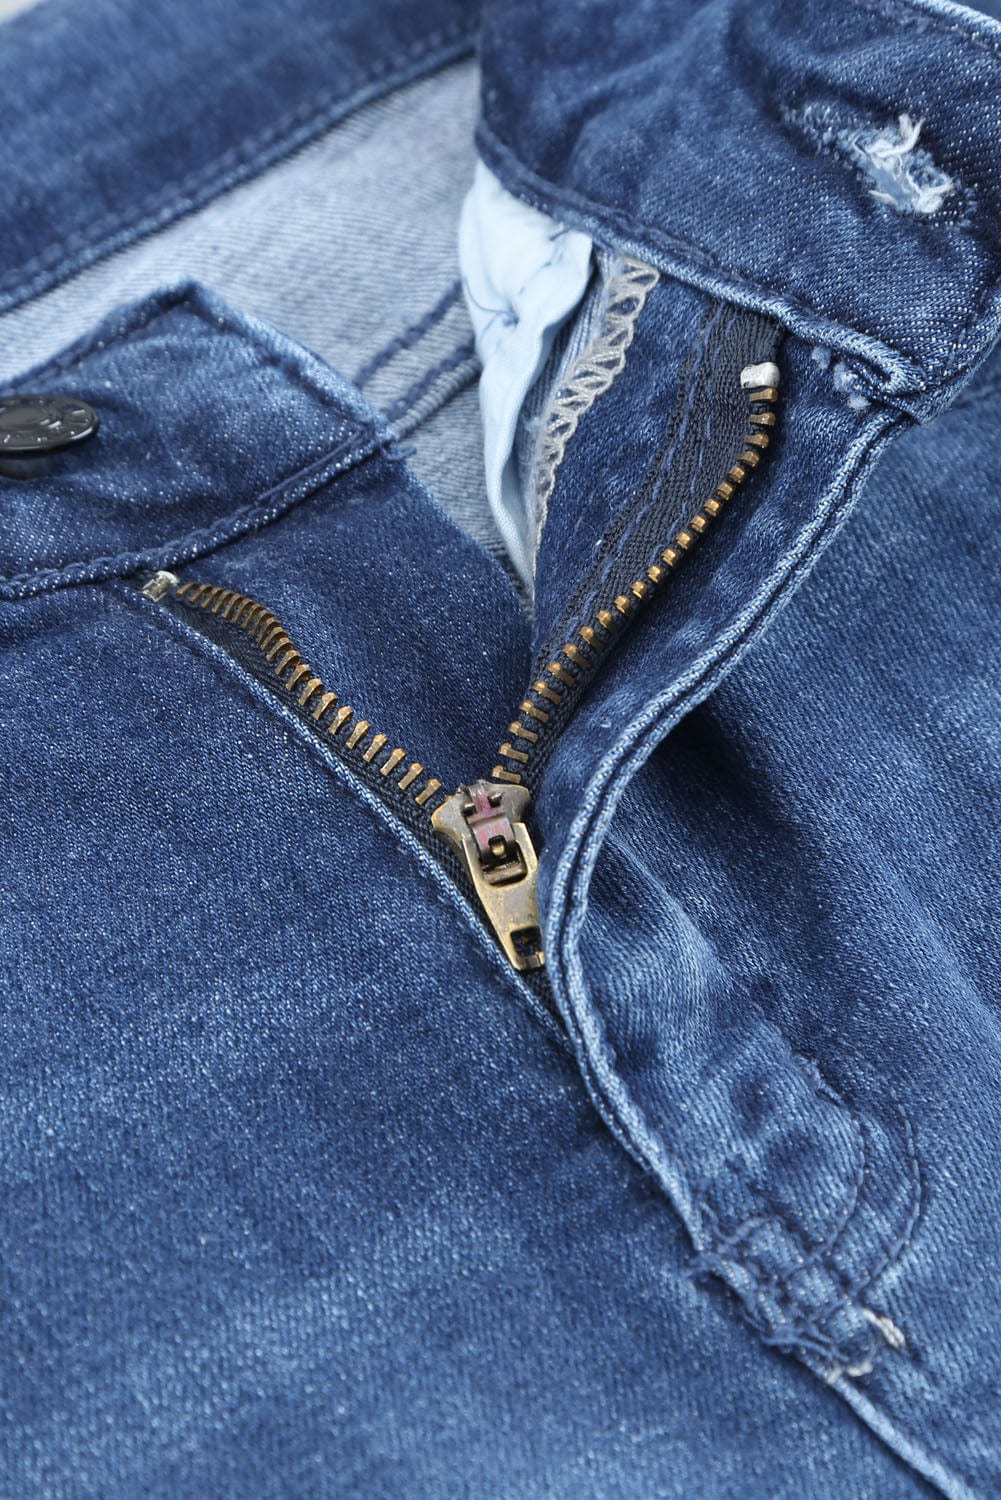 The802Gypsy  Women's Jeans Traveling Gypsy Boyfriend Denim Pants